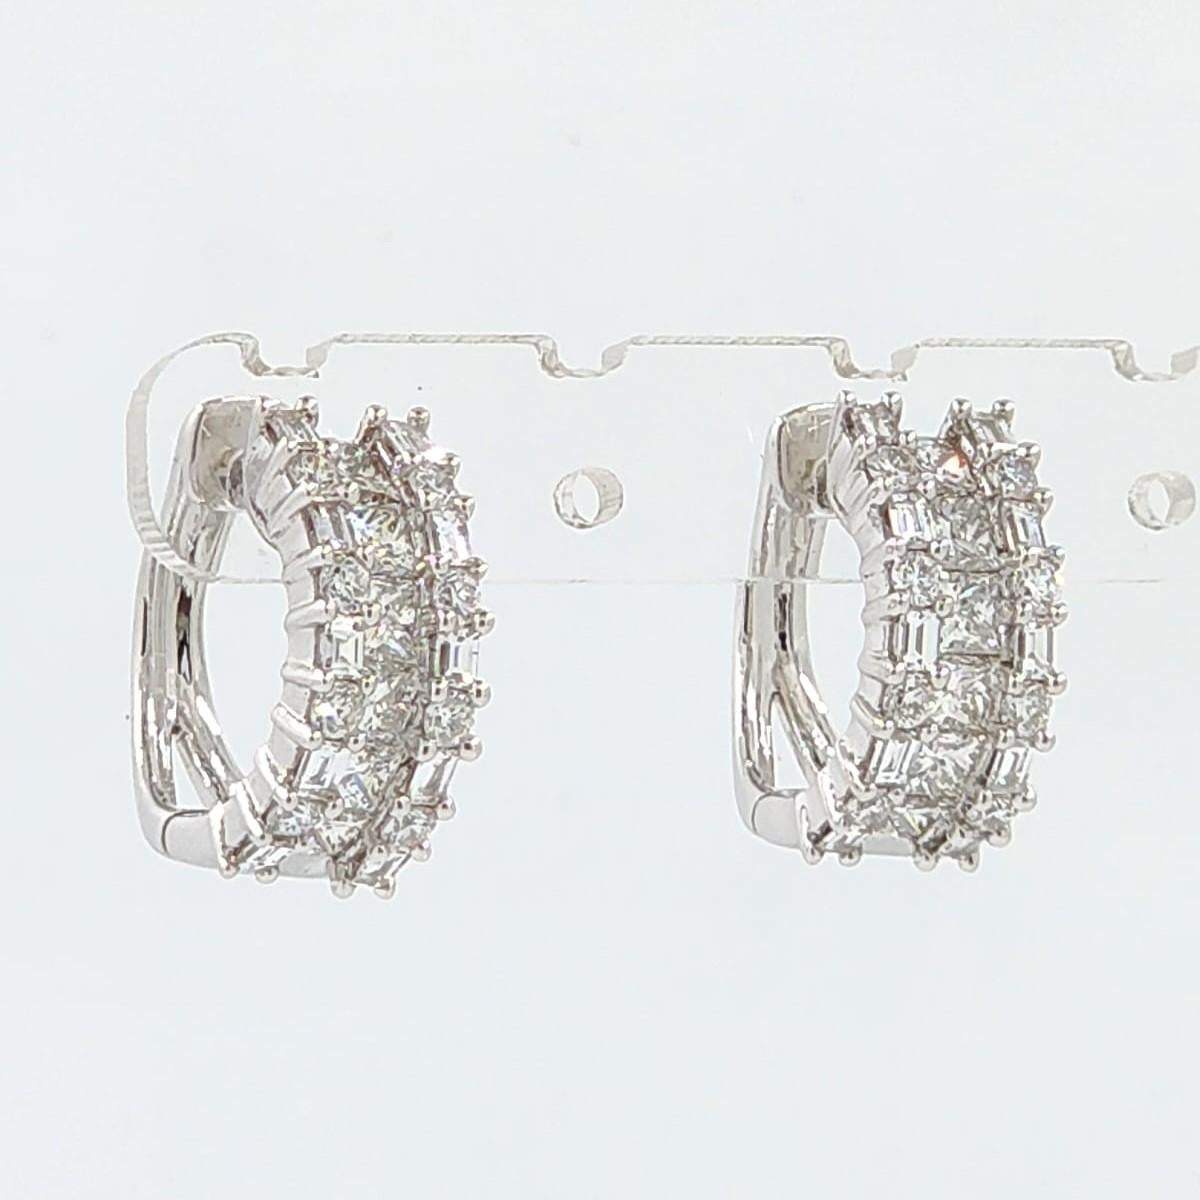 Voici une superbe paire de boucles d'oreilles en diamant, parfaites pour toutes les occasions. Ces boucles d'oreilles exquises présentent une combinaison de diamants baguettes, princesses et ronds, totalisant 2,2 carats, sertis dans de l'or blanc 18